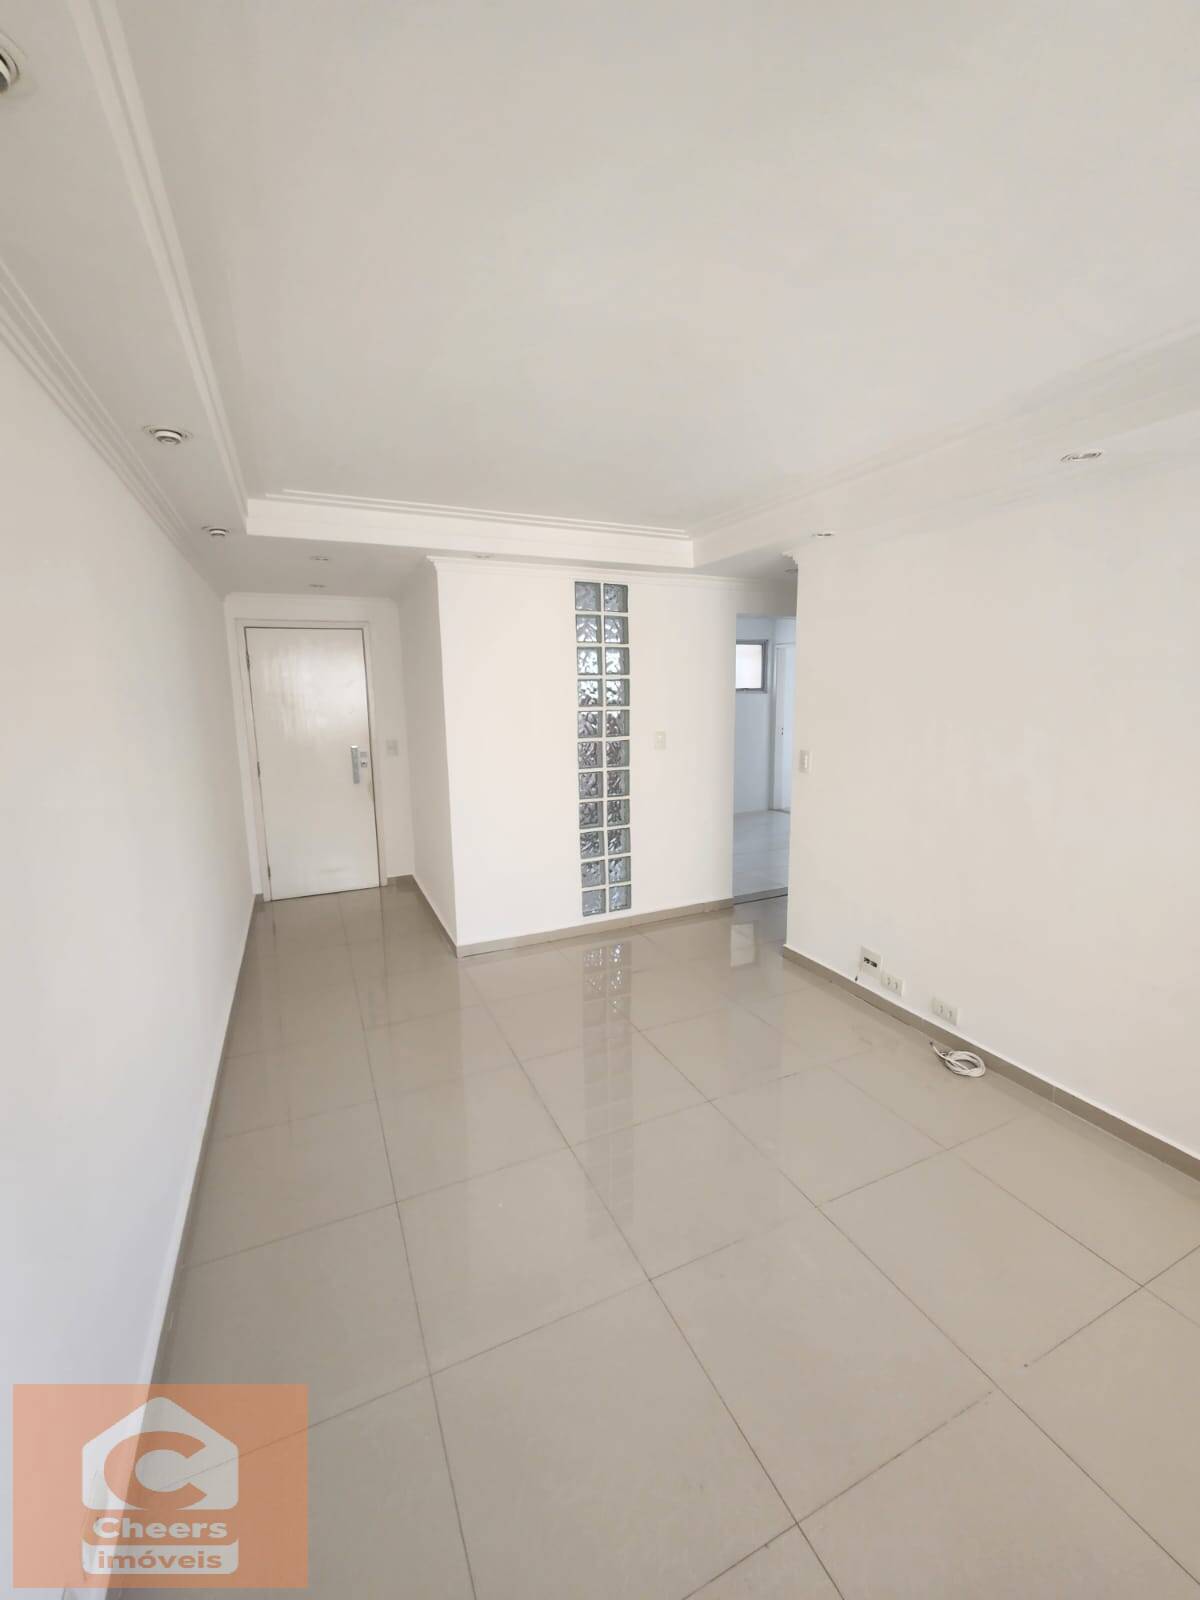 Apartamento, 3 quartos, 107 m² - Foto 1